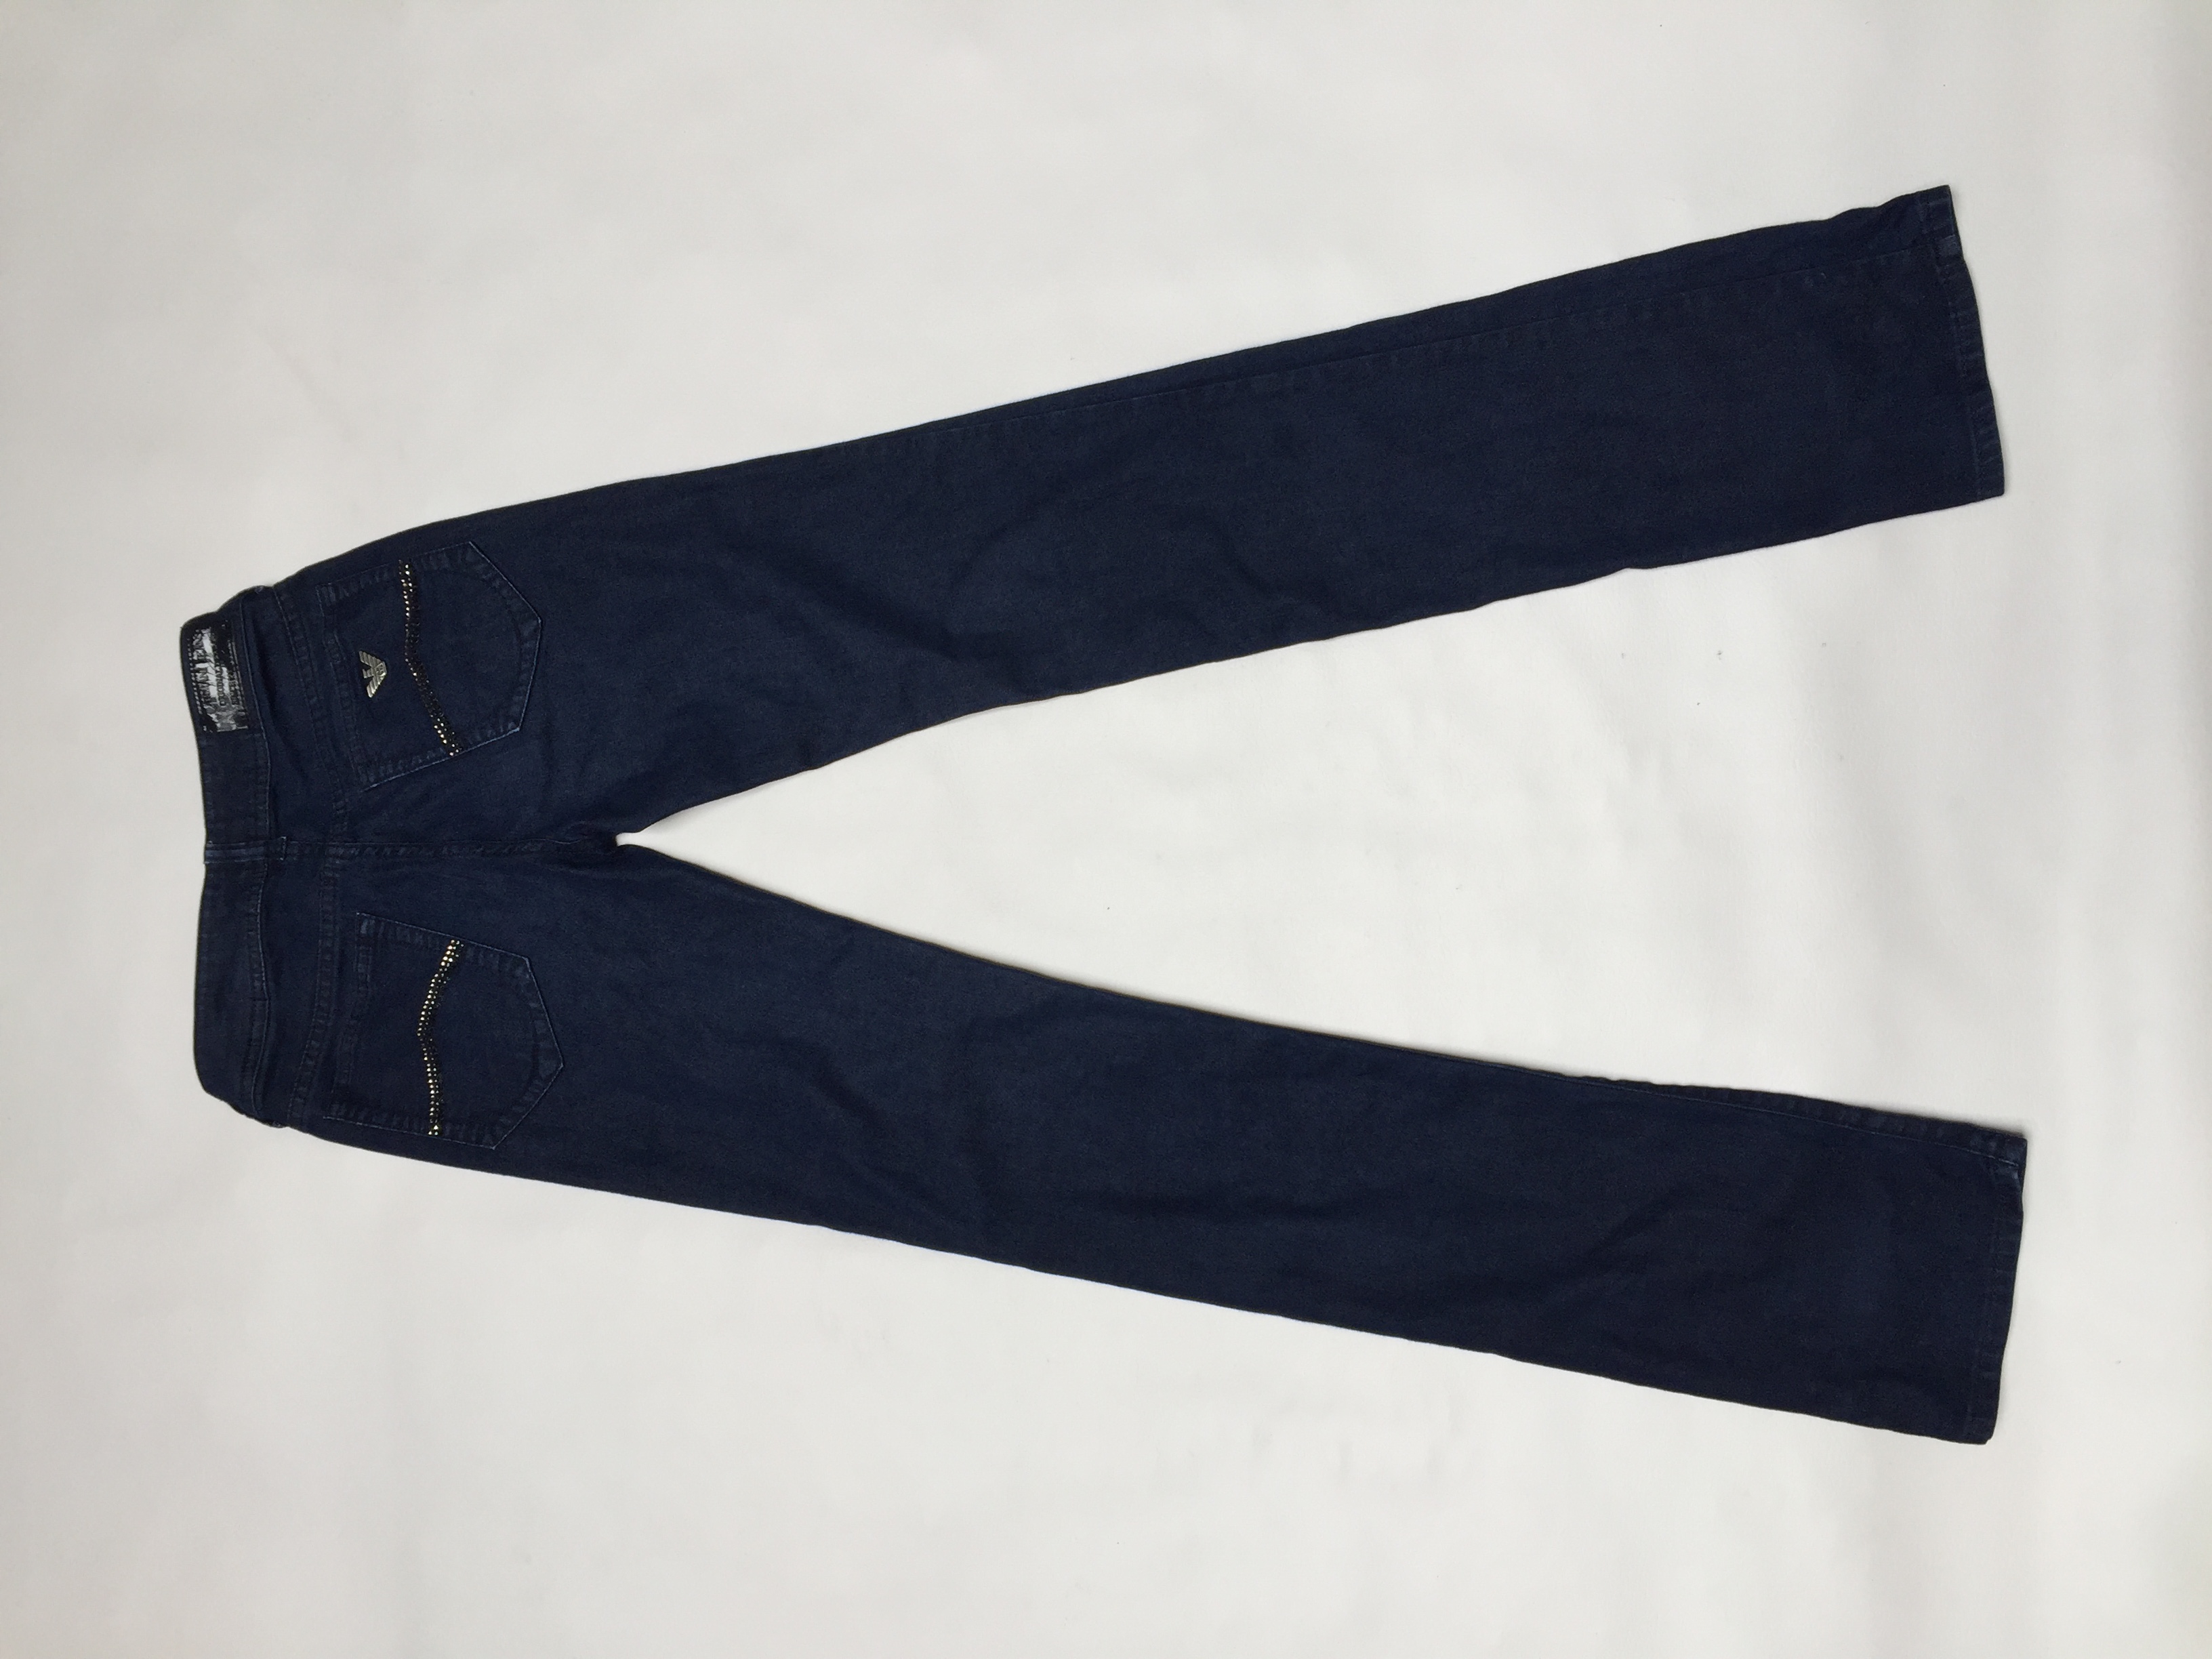 Pantalón Armani Jeans azul, 79% algodón, bolsillos delanteros y posteriores con strass, es pitillo y ligeramente stretch. Precio original USD100
Talla 25